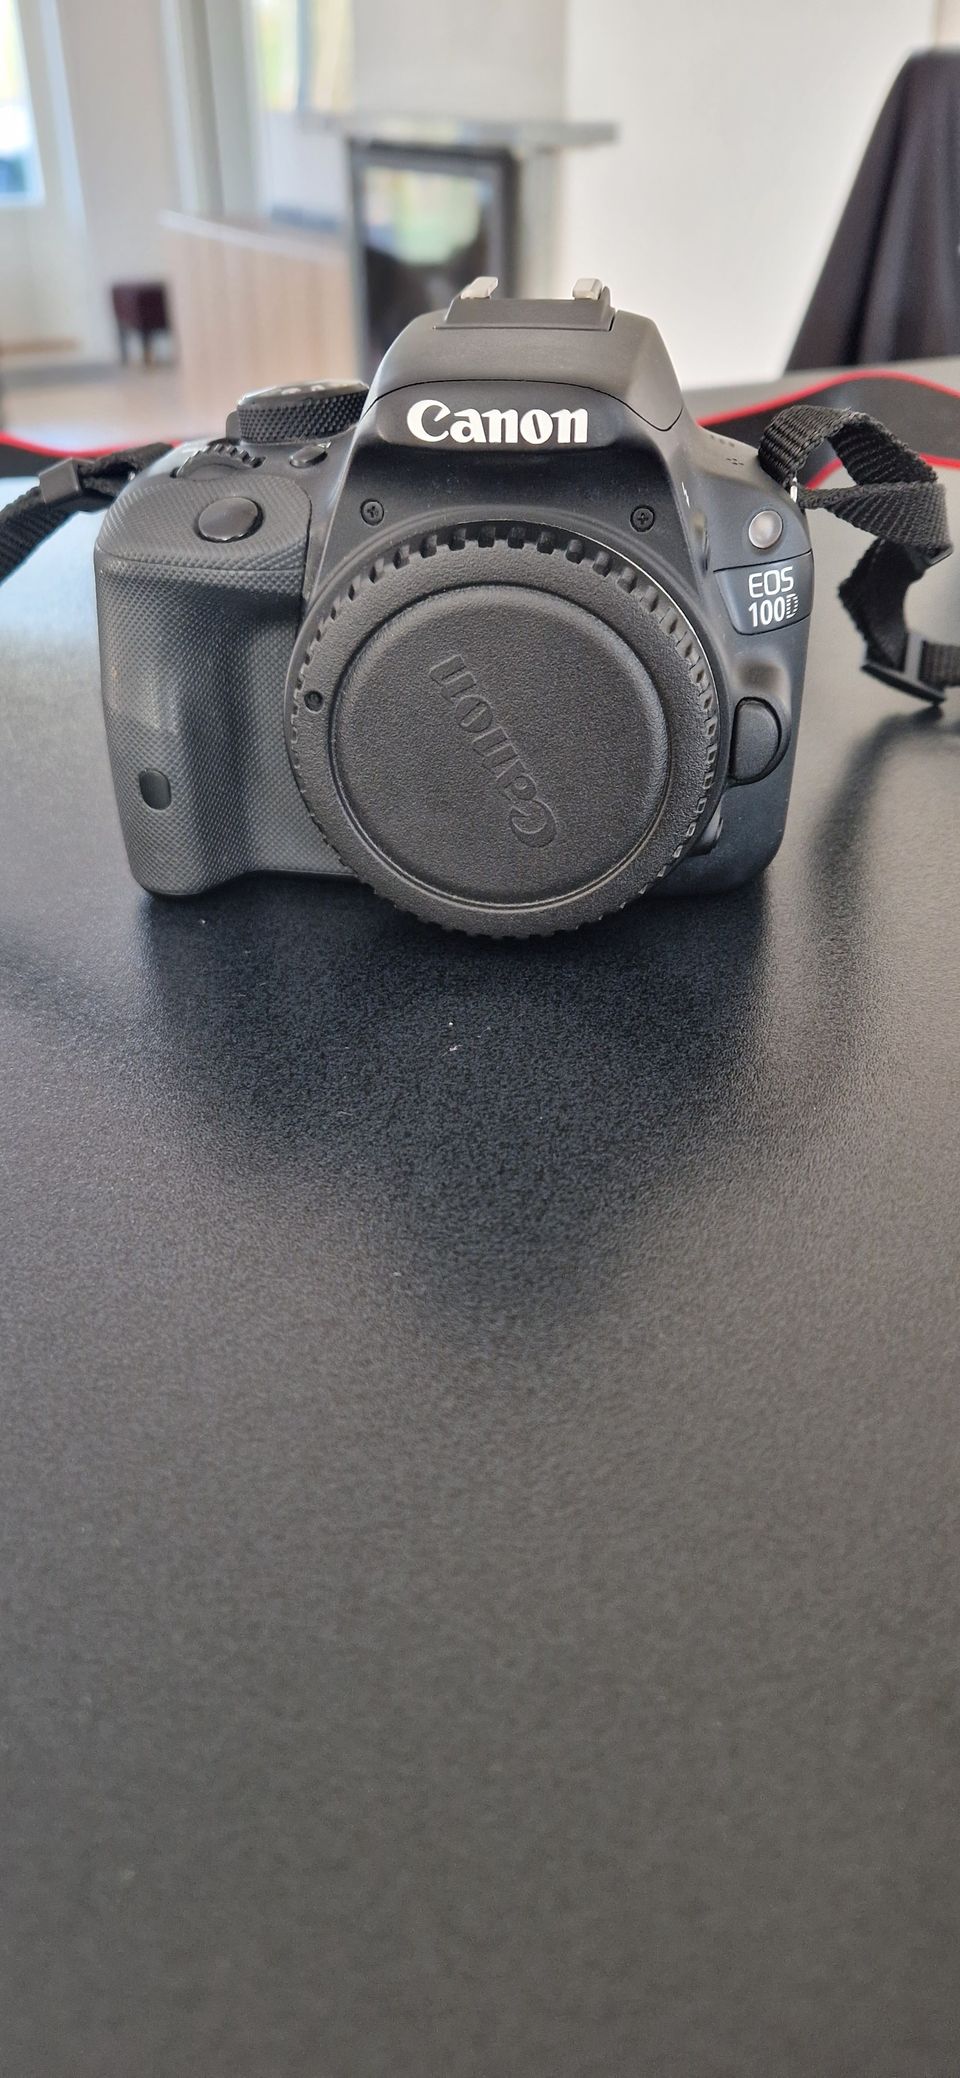 Canon EOS 100D järjestelmäkamera